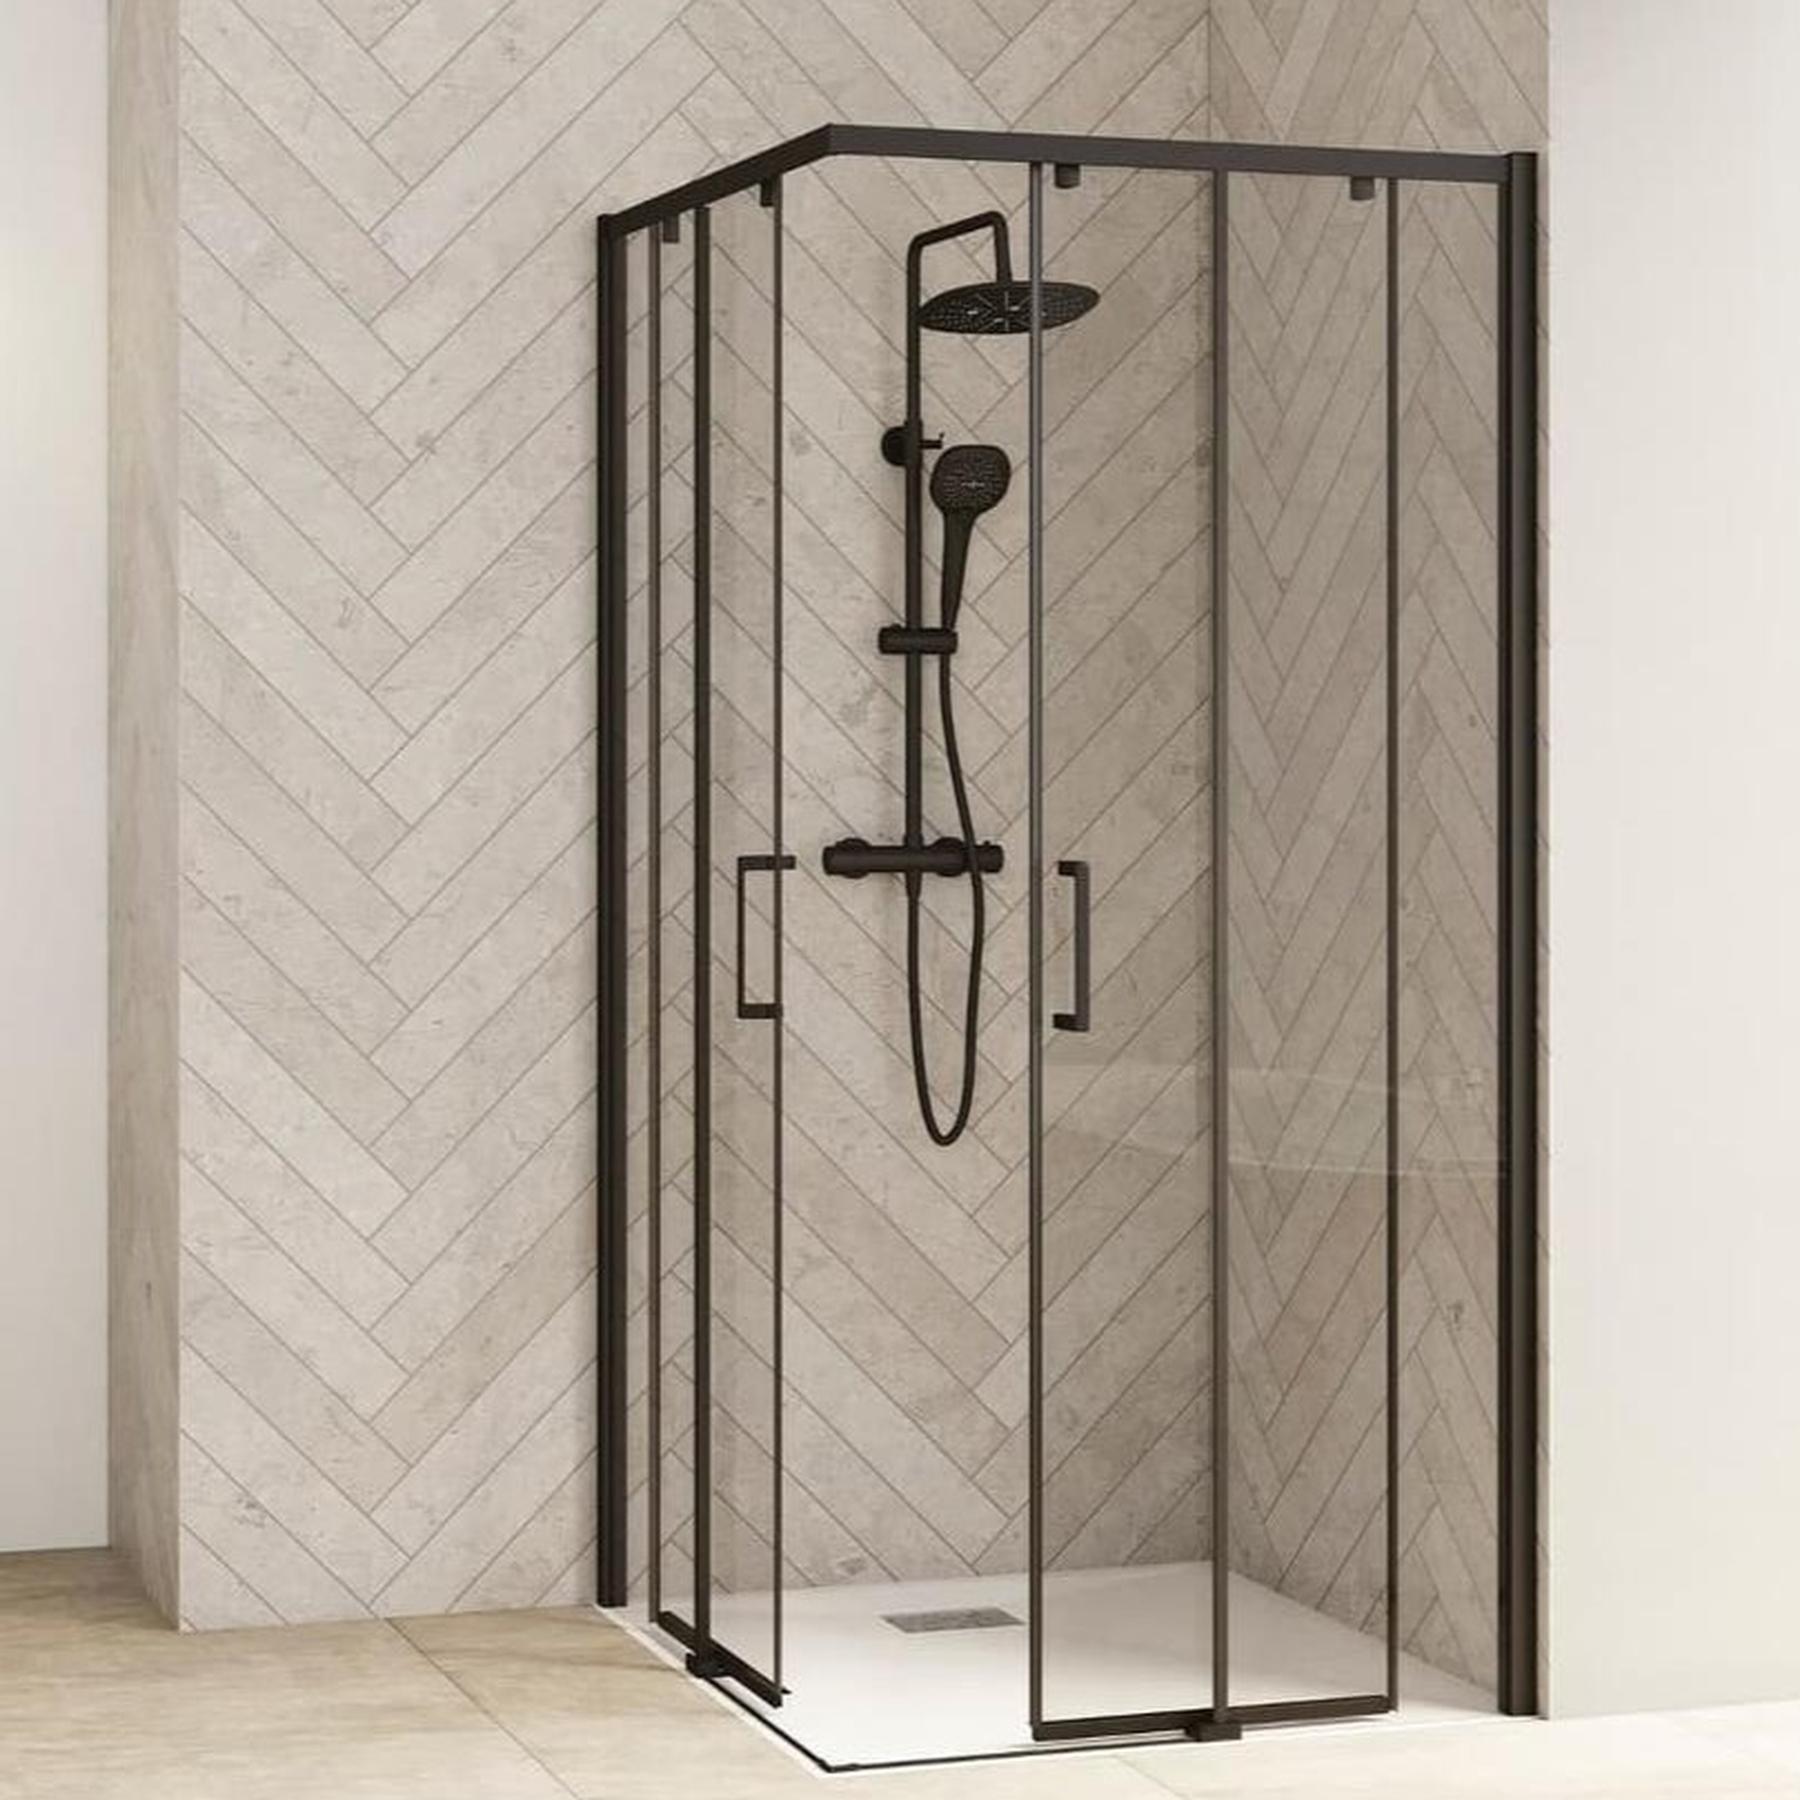 Porte de douche coulissante droite (à coupler avec la gauche) SMART Design largeur 1.10m hauteur 2.05m profilé noir verre transparent droite